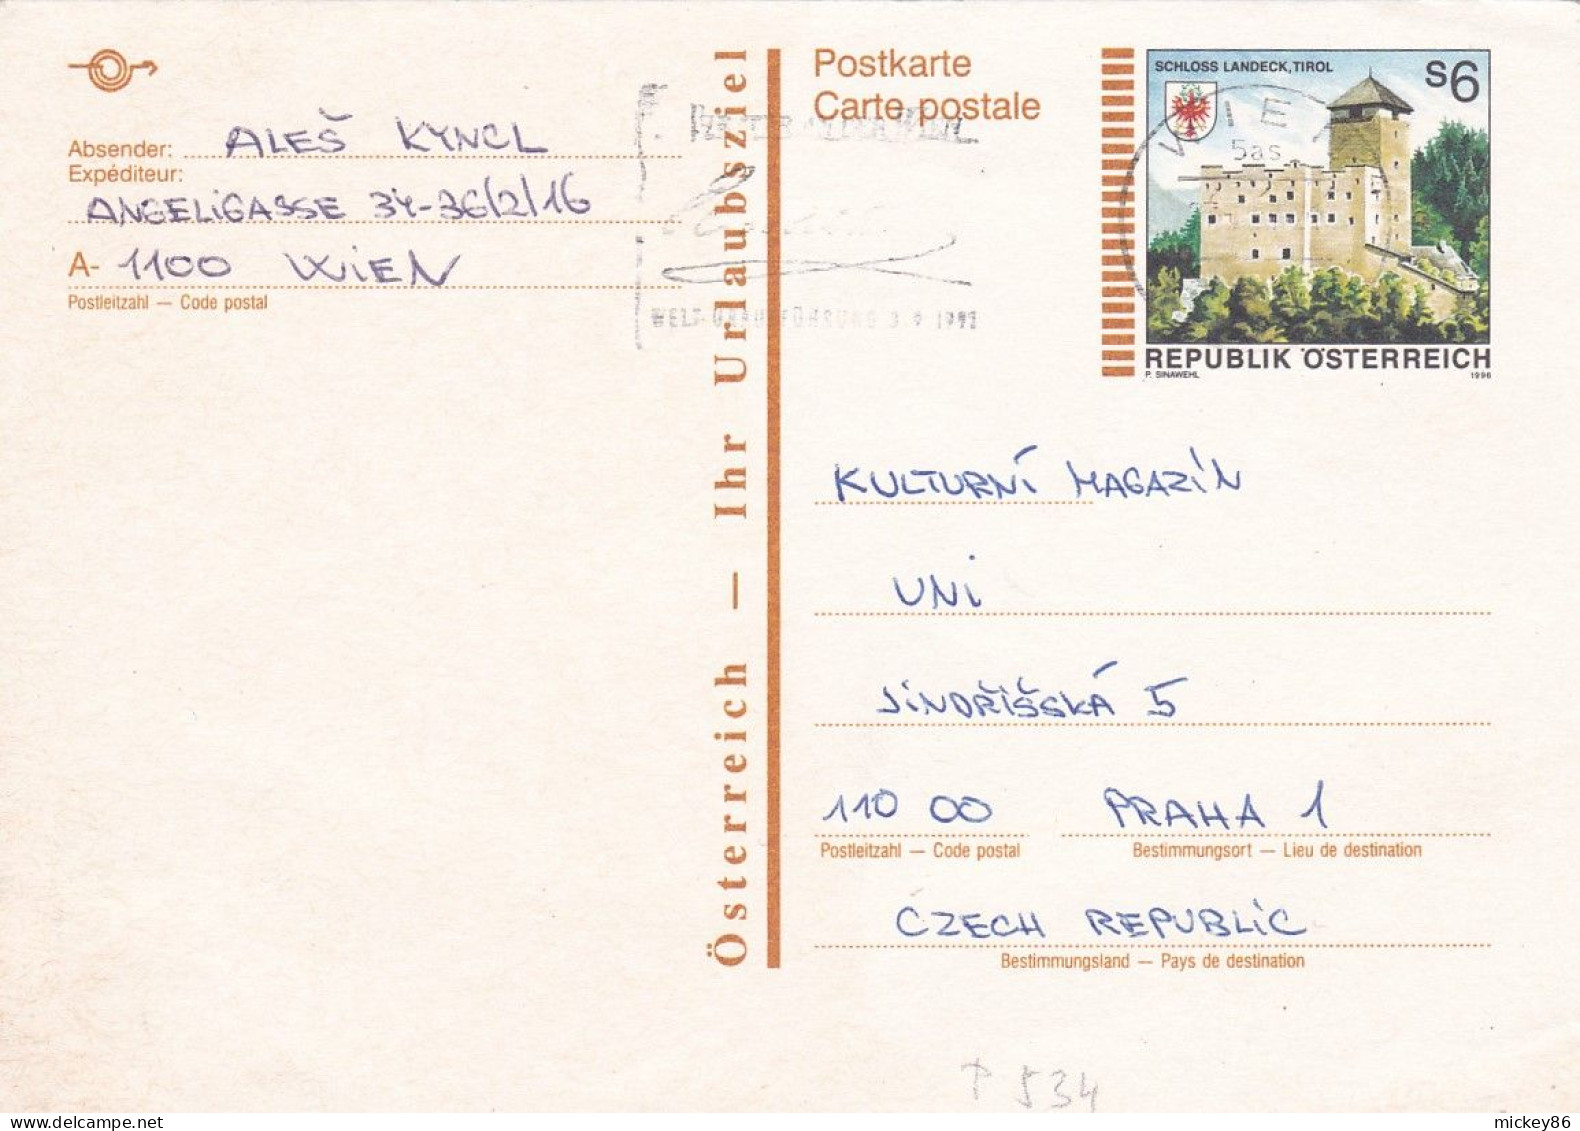 Autriche--1991--entier Carte Postale (schloss Landeck) De WIEN Pour PRAHA (Czech Republic) .... - Lettres & Documents